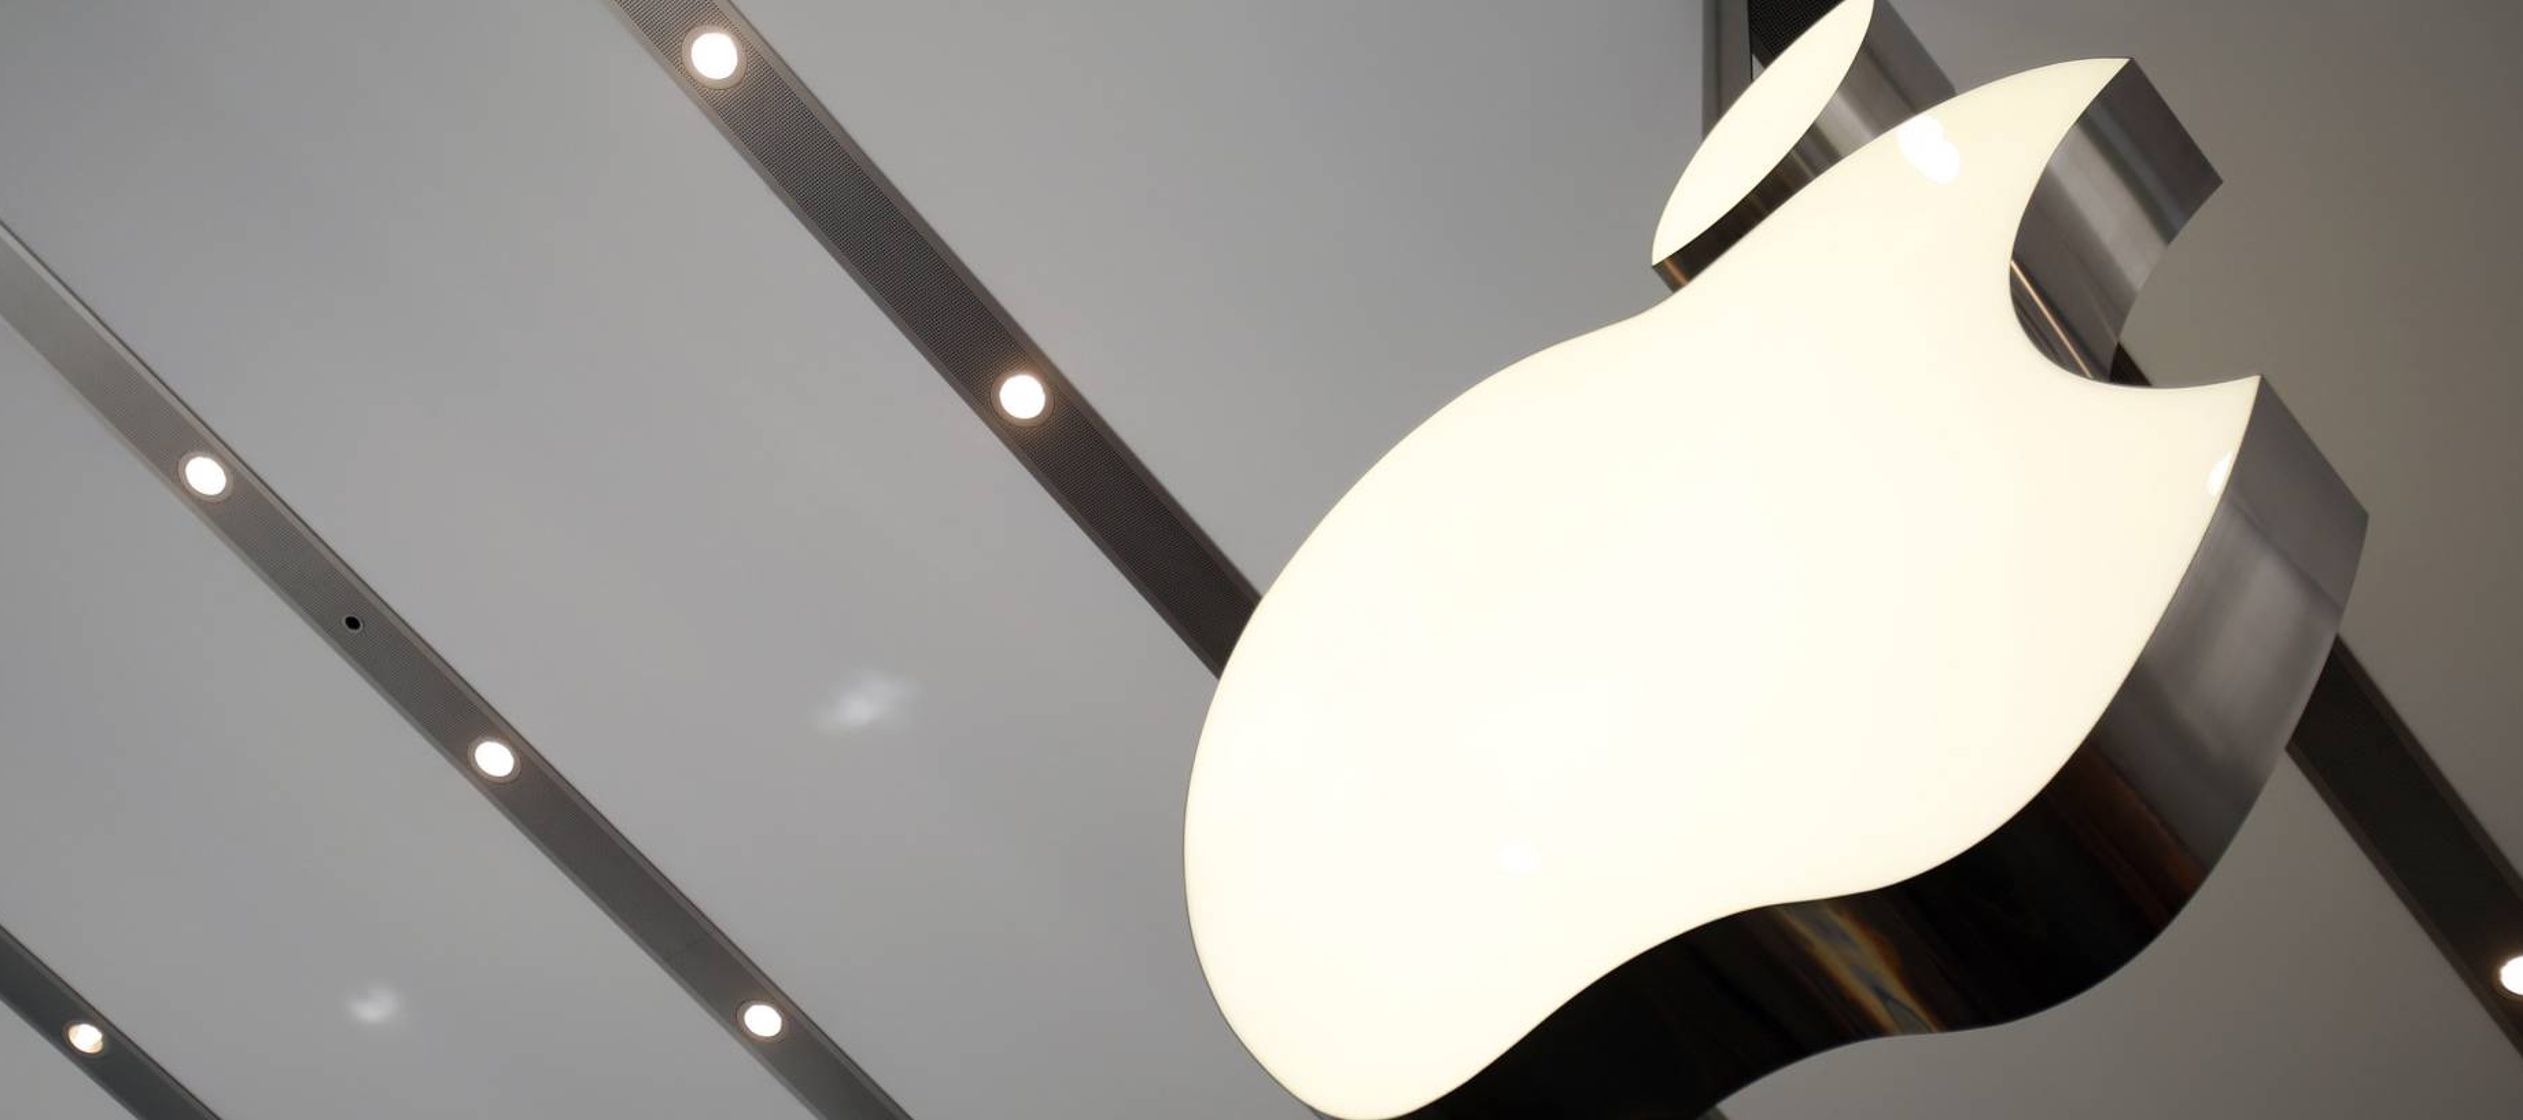 El pasado 12 de septiembre, Apple presentó las últimas novedades de su producto...